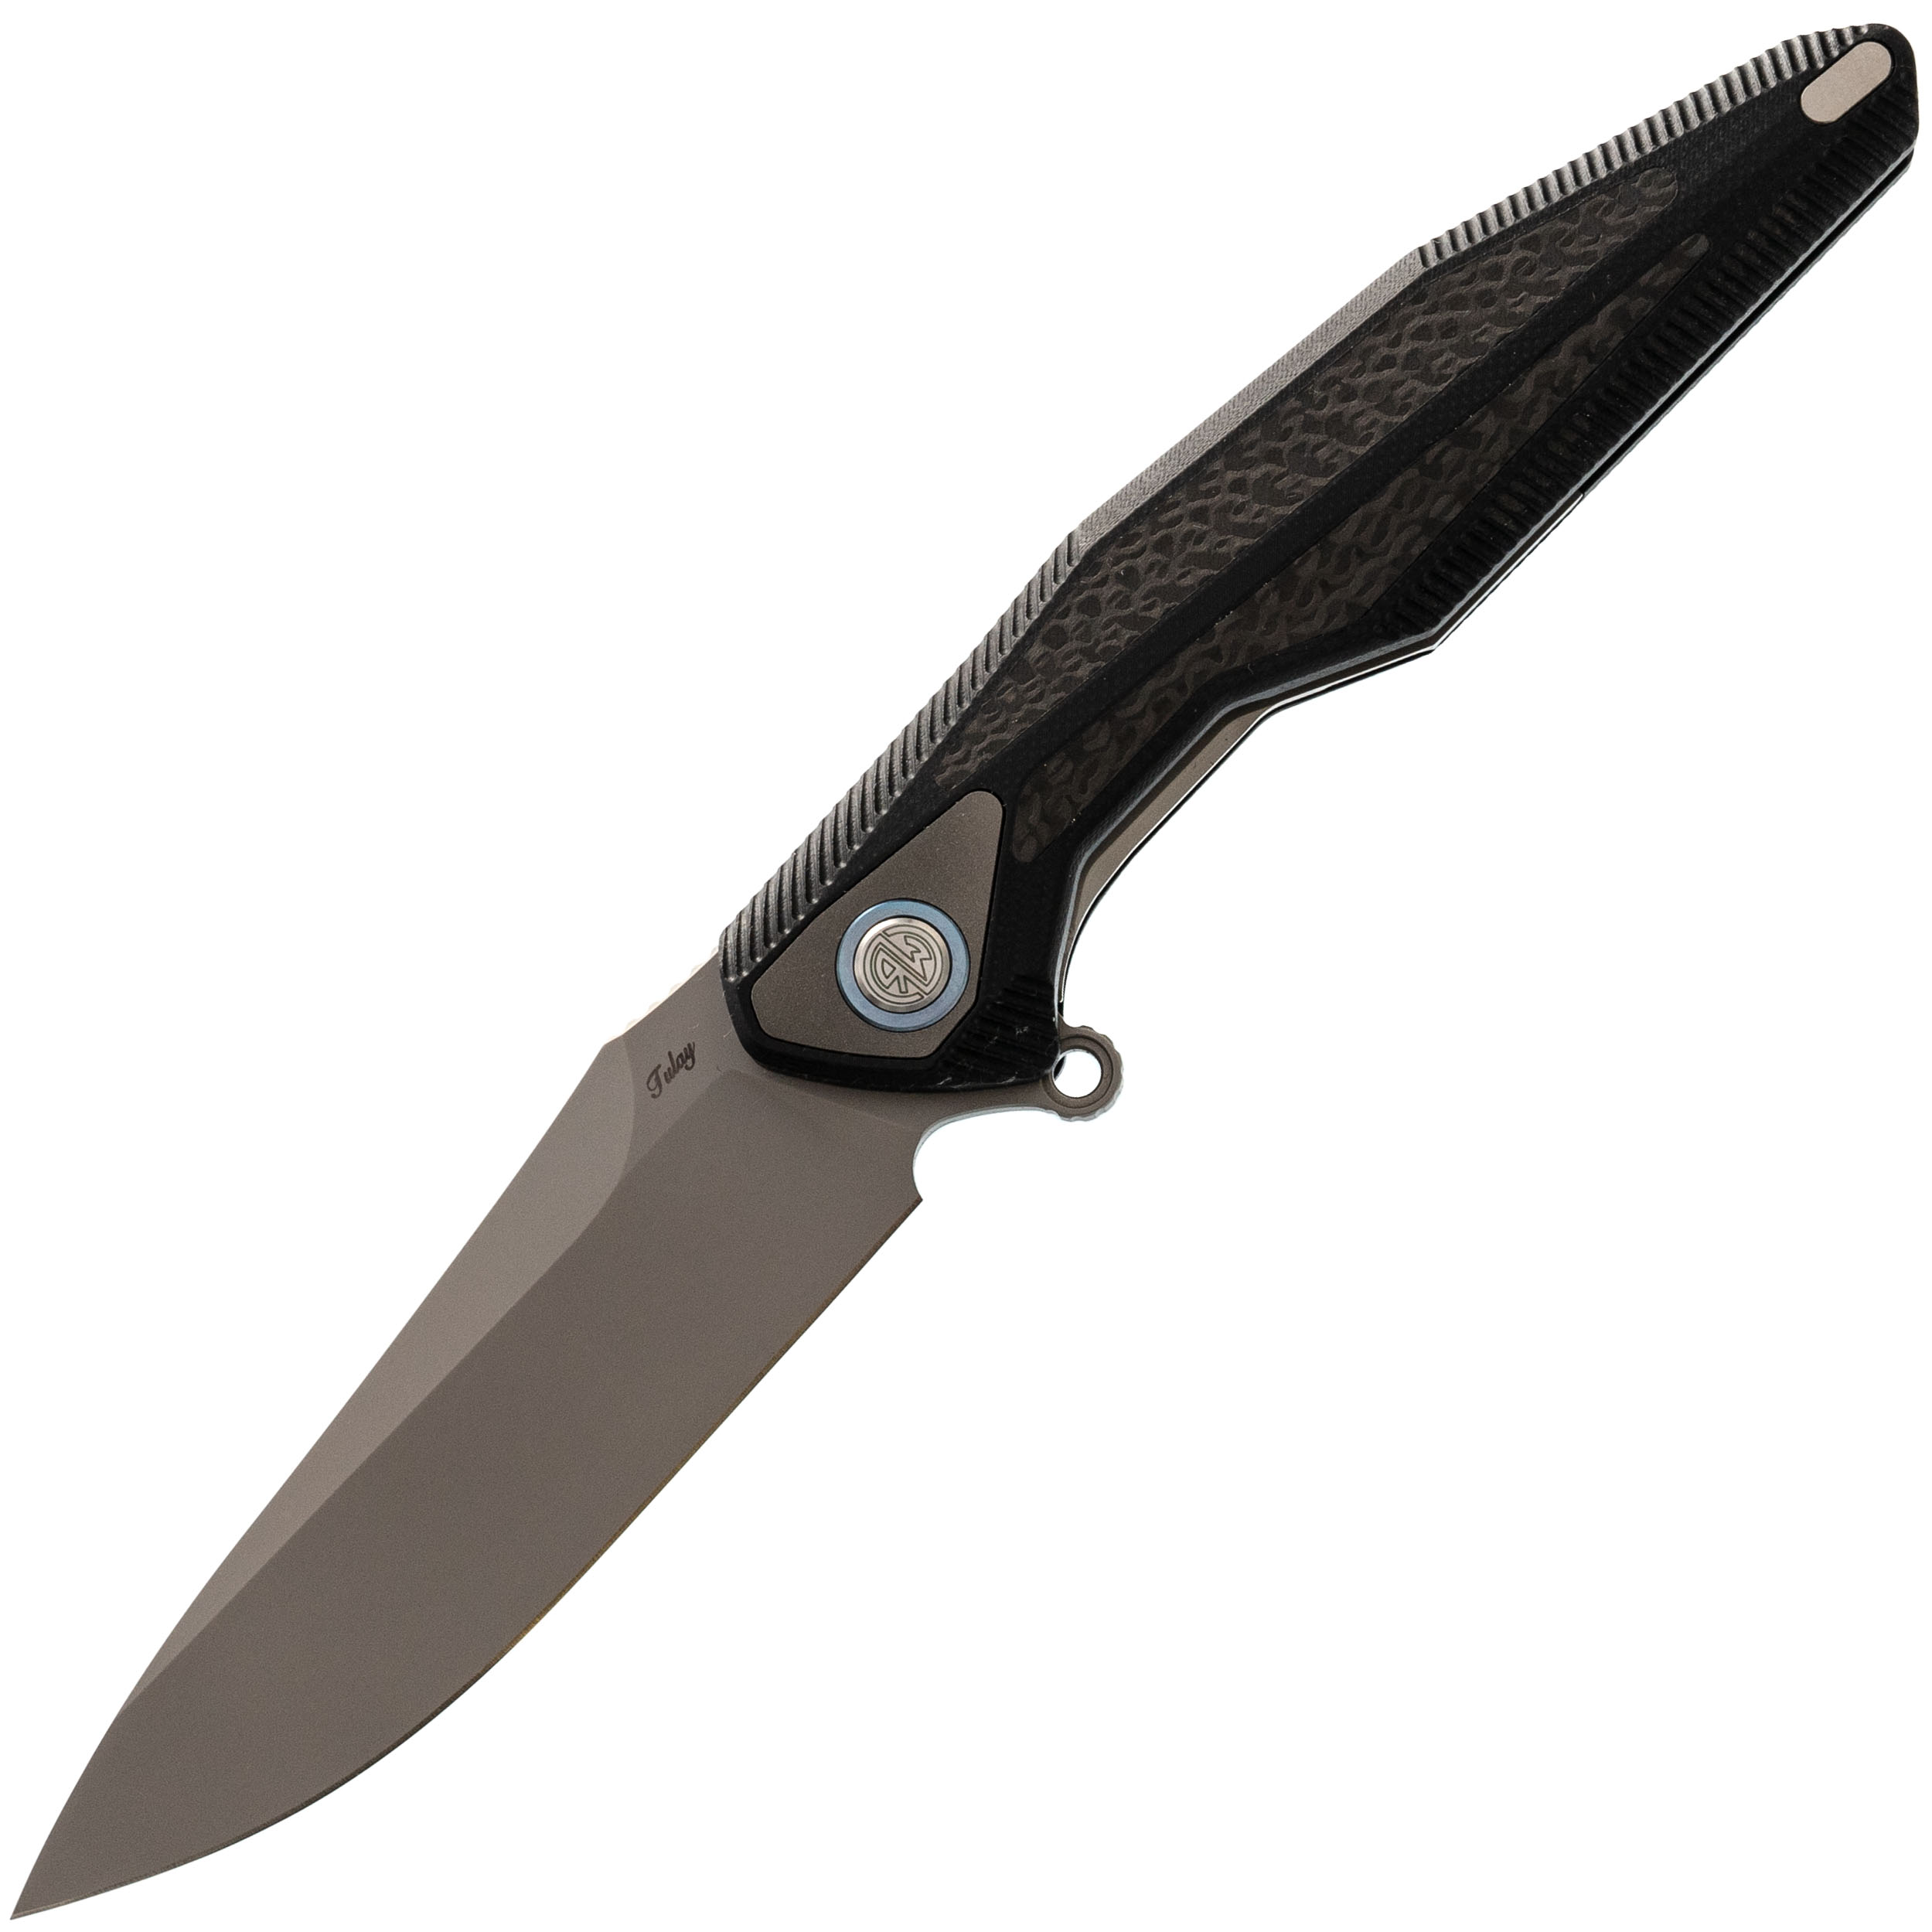 Нож складной Tulay Rikeknife, сталь 154CM, Black G10/Carbon Fiber